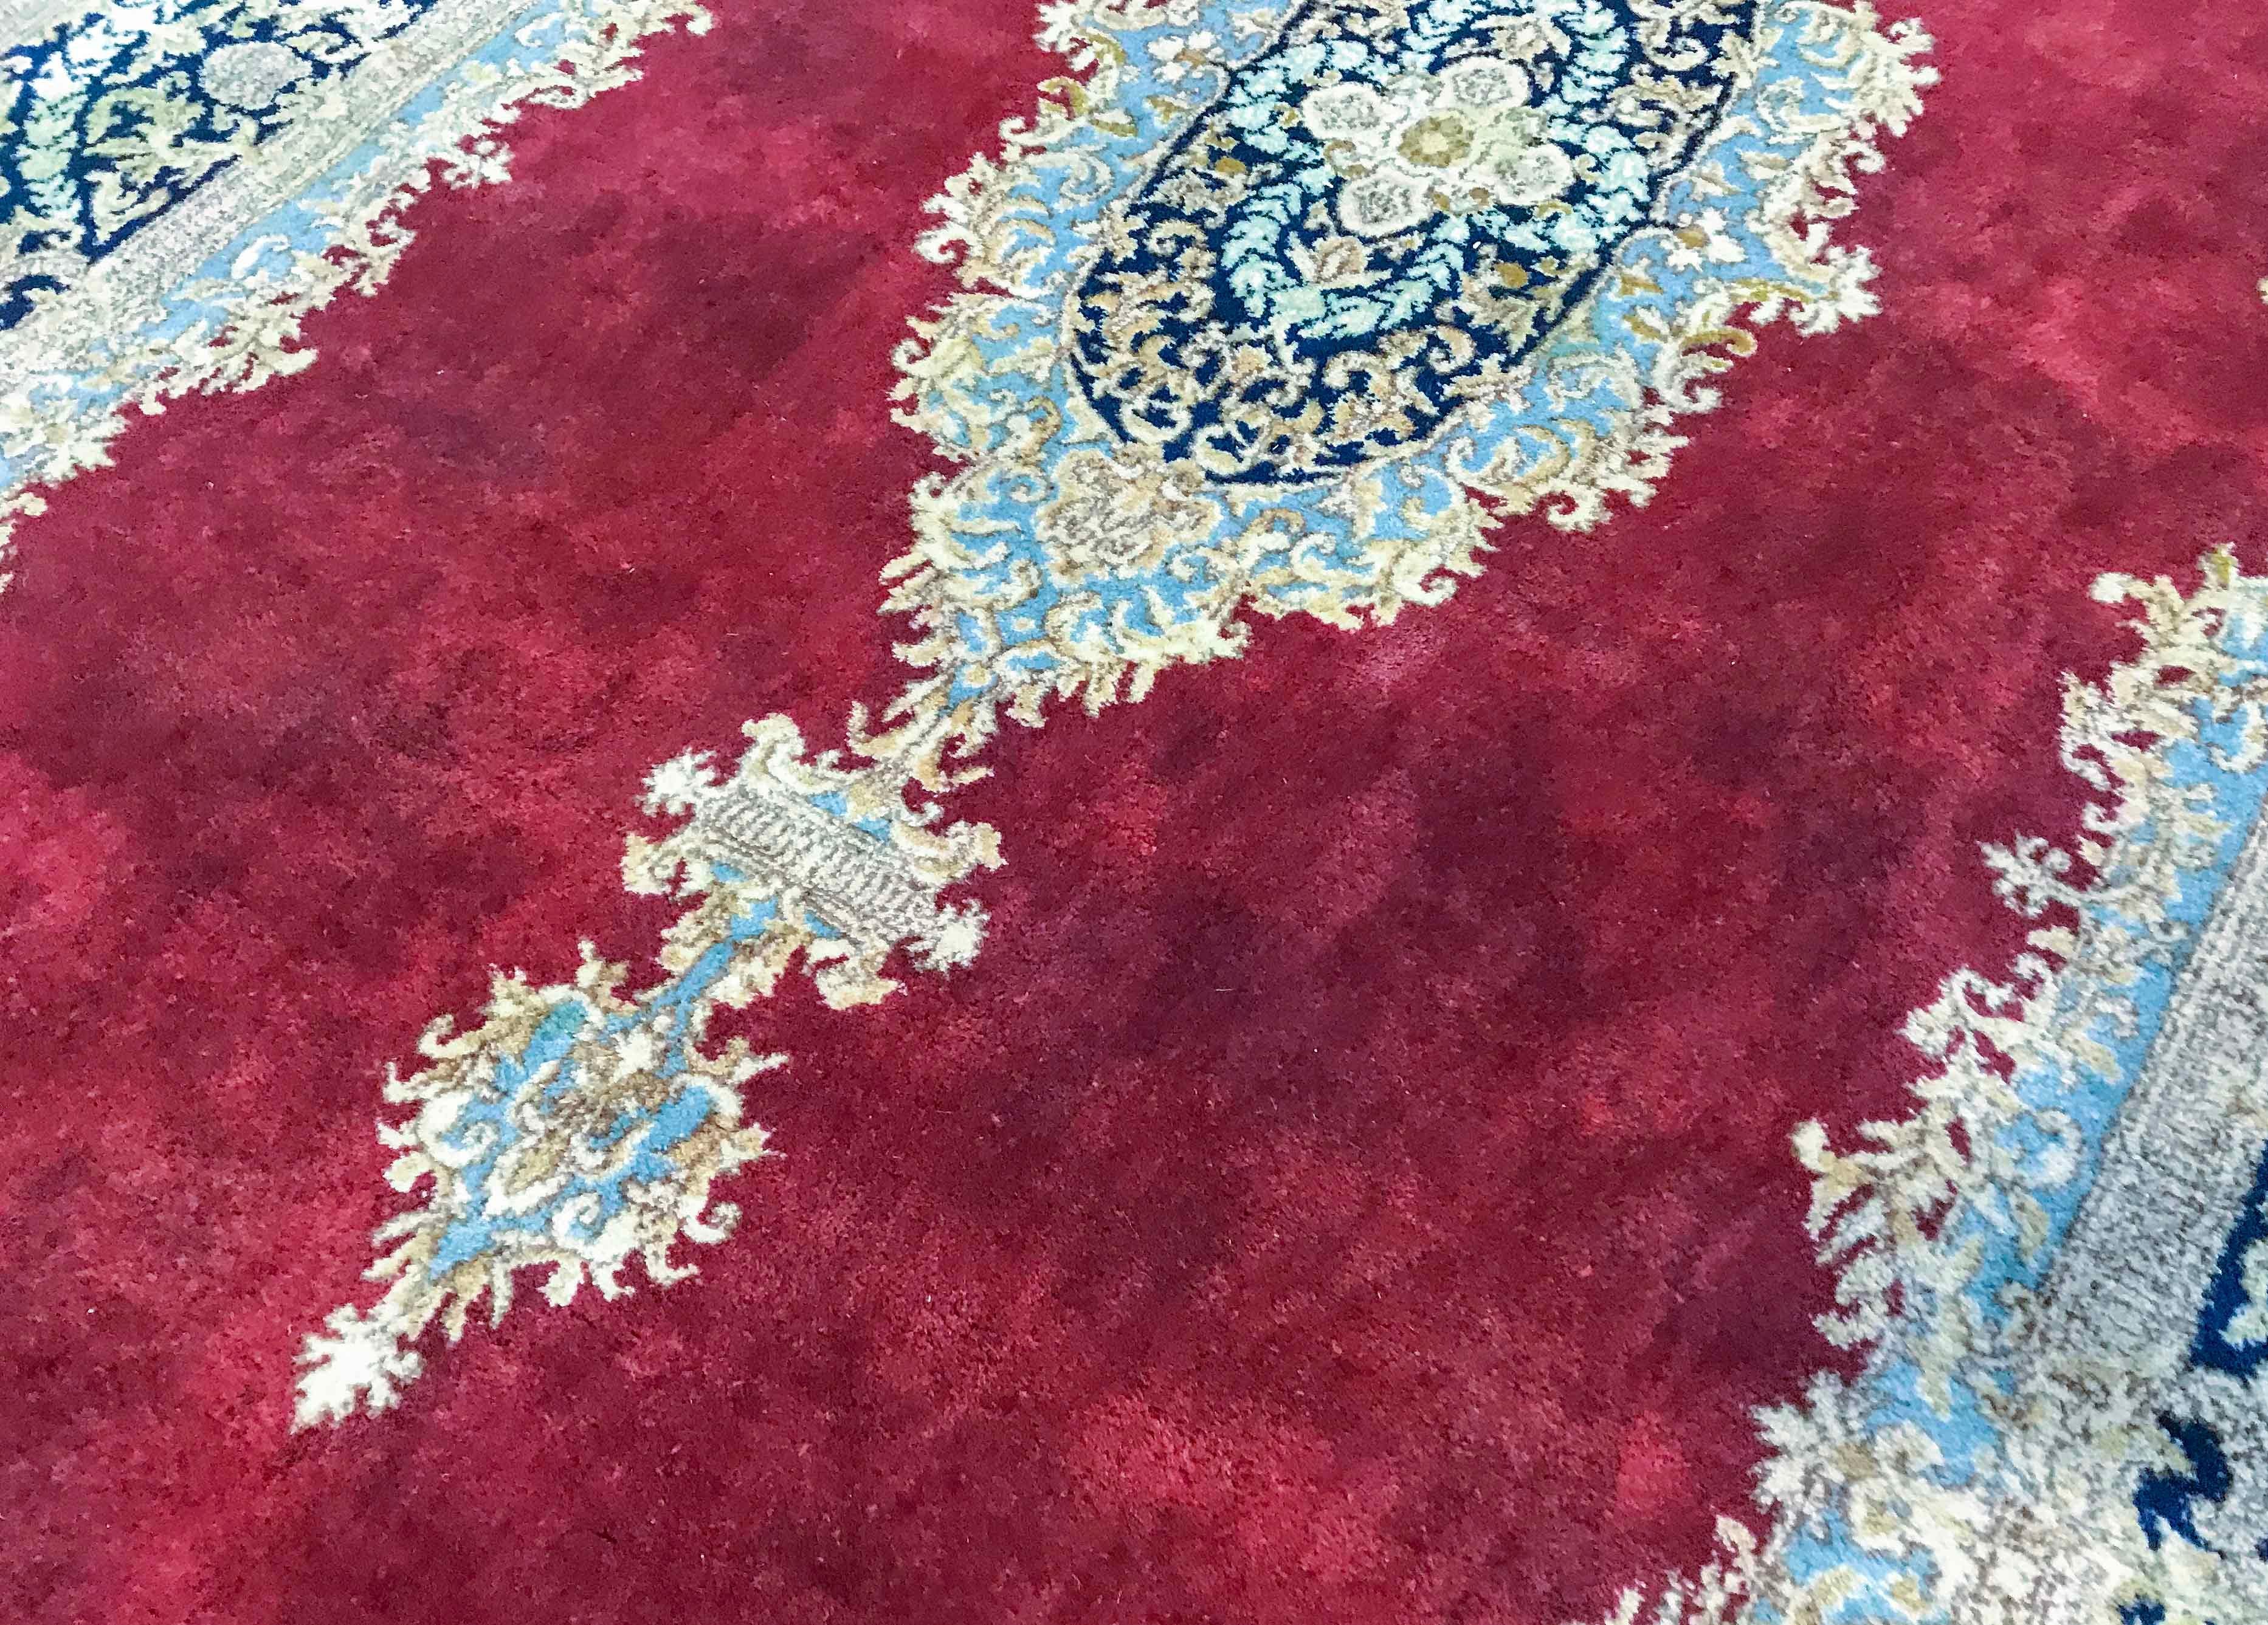 Alter persischer Kerman-Teppich, um 1940. Ein beeindruckender, schmaler Teppich mit einem wunderschönen, tiefroten Feld und einem hellen Medaillon, dessen Farbgebung sich an den Seiten und in der Bordüre wiederholt, um einen Teppich zu schaffen, der